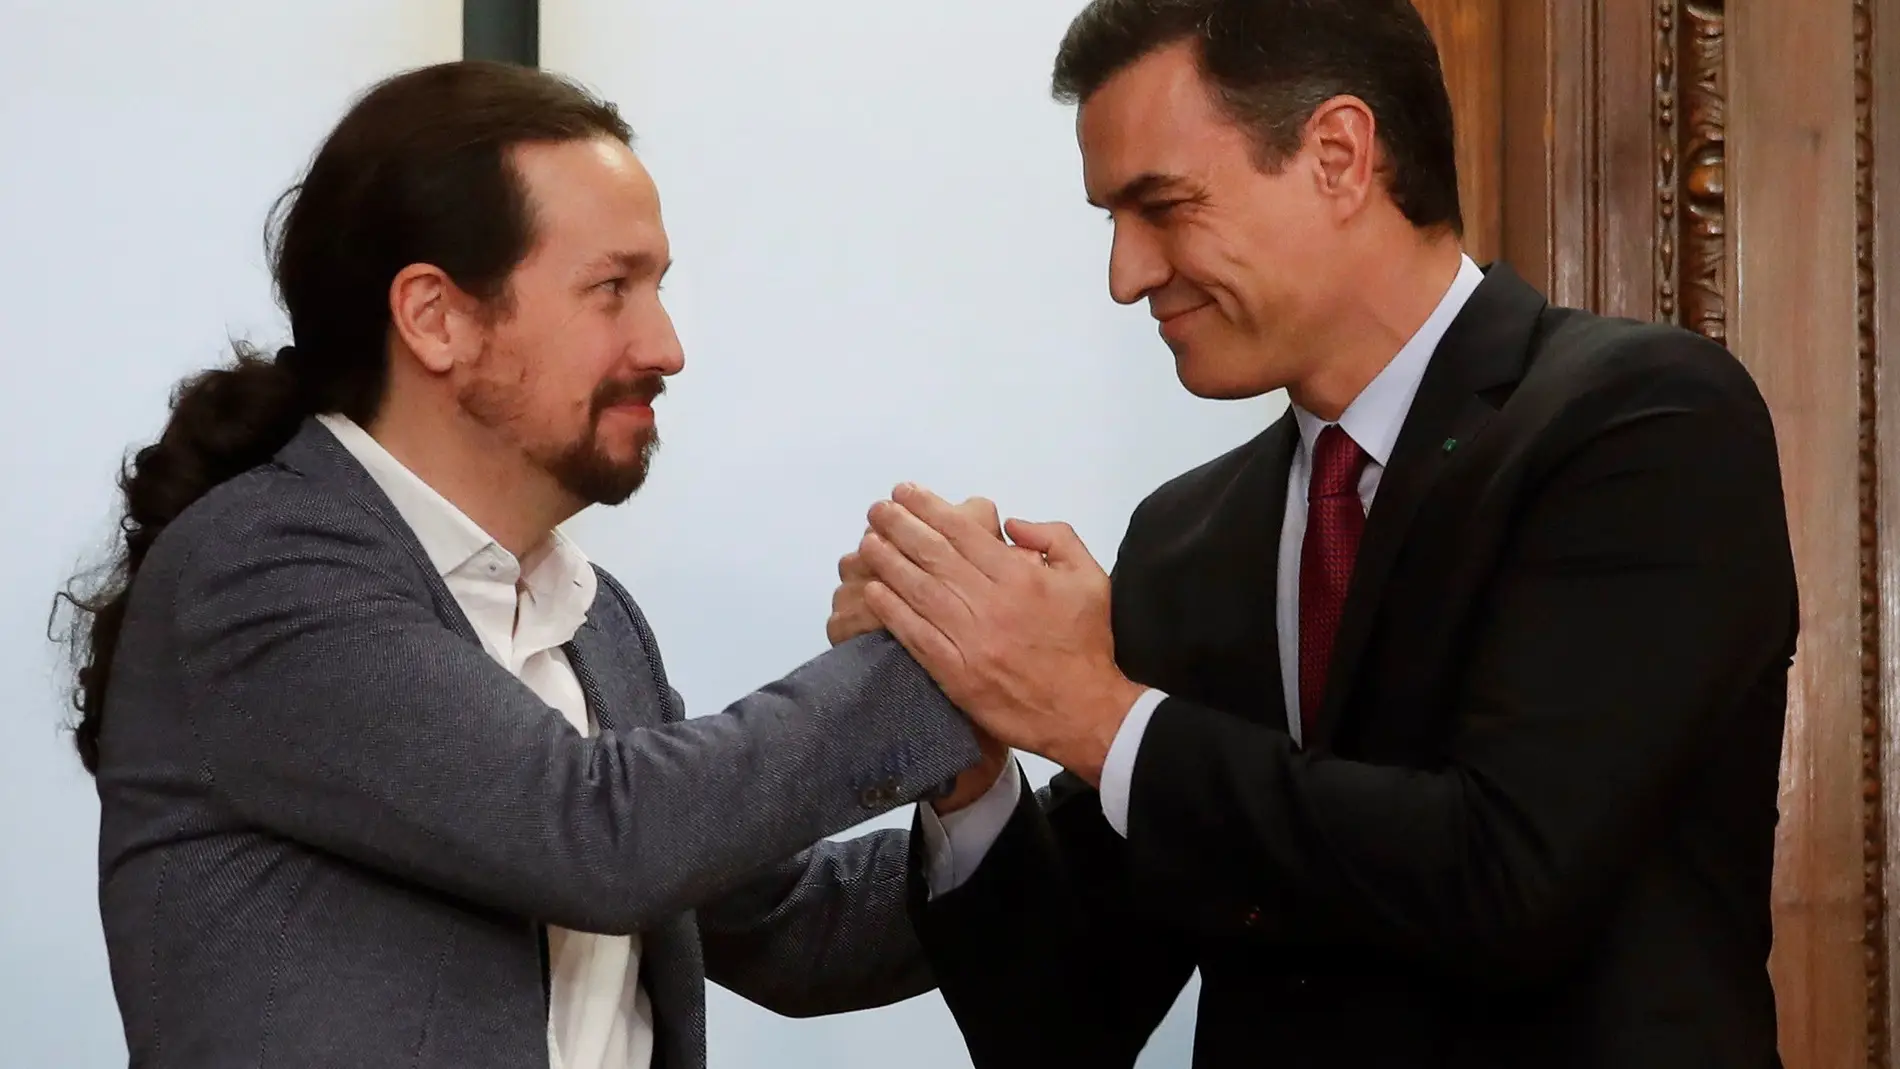 Pablo Iglesias y Pedro Sánchez se estrechan la mano sonrientes